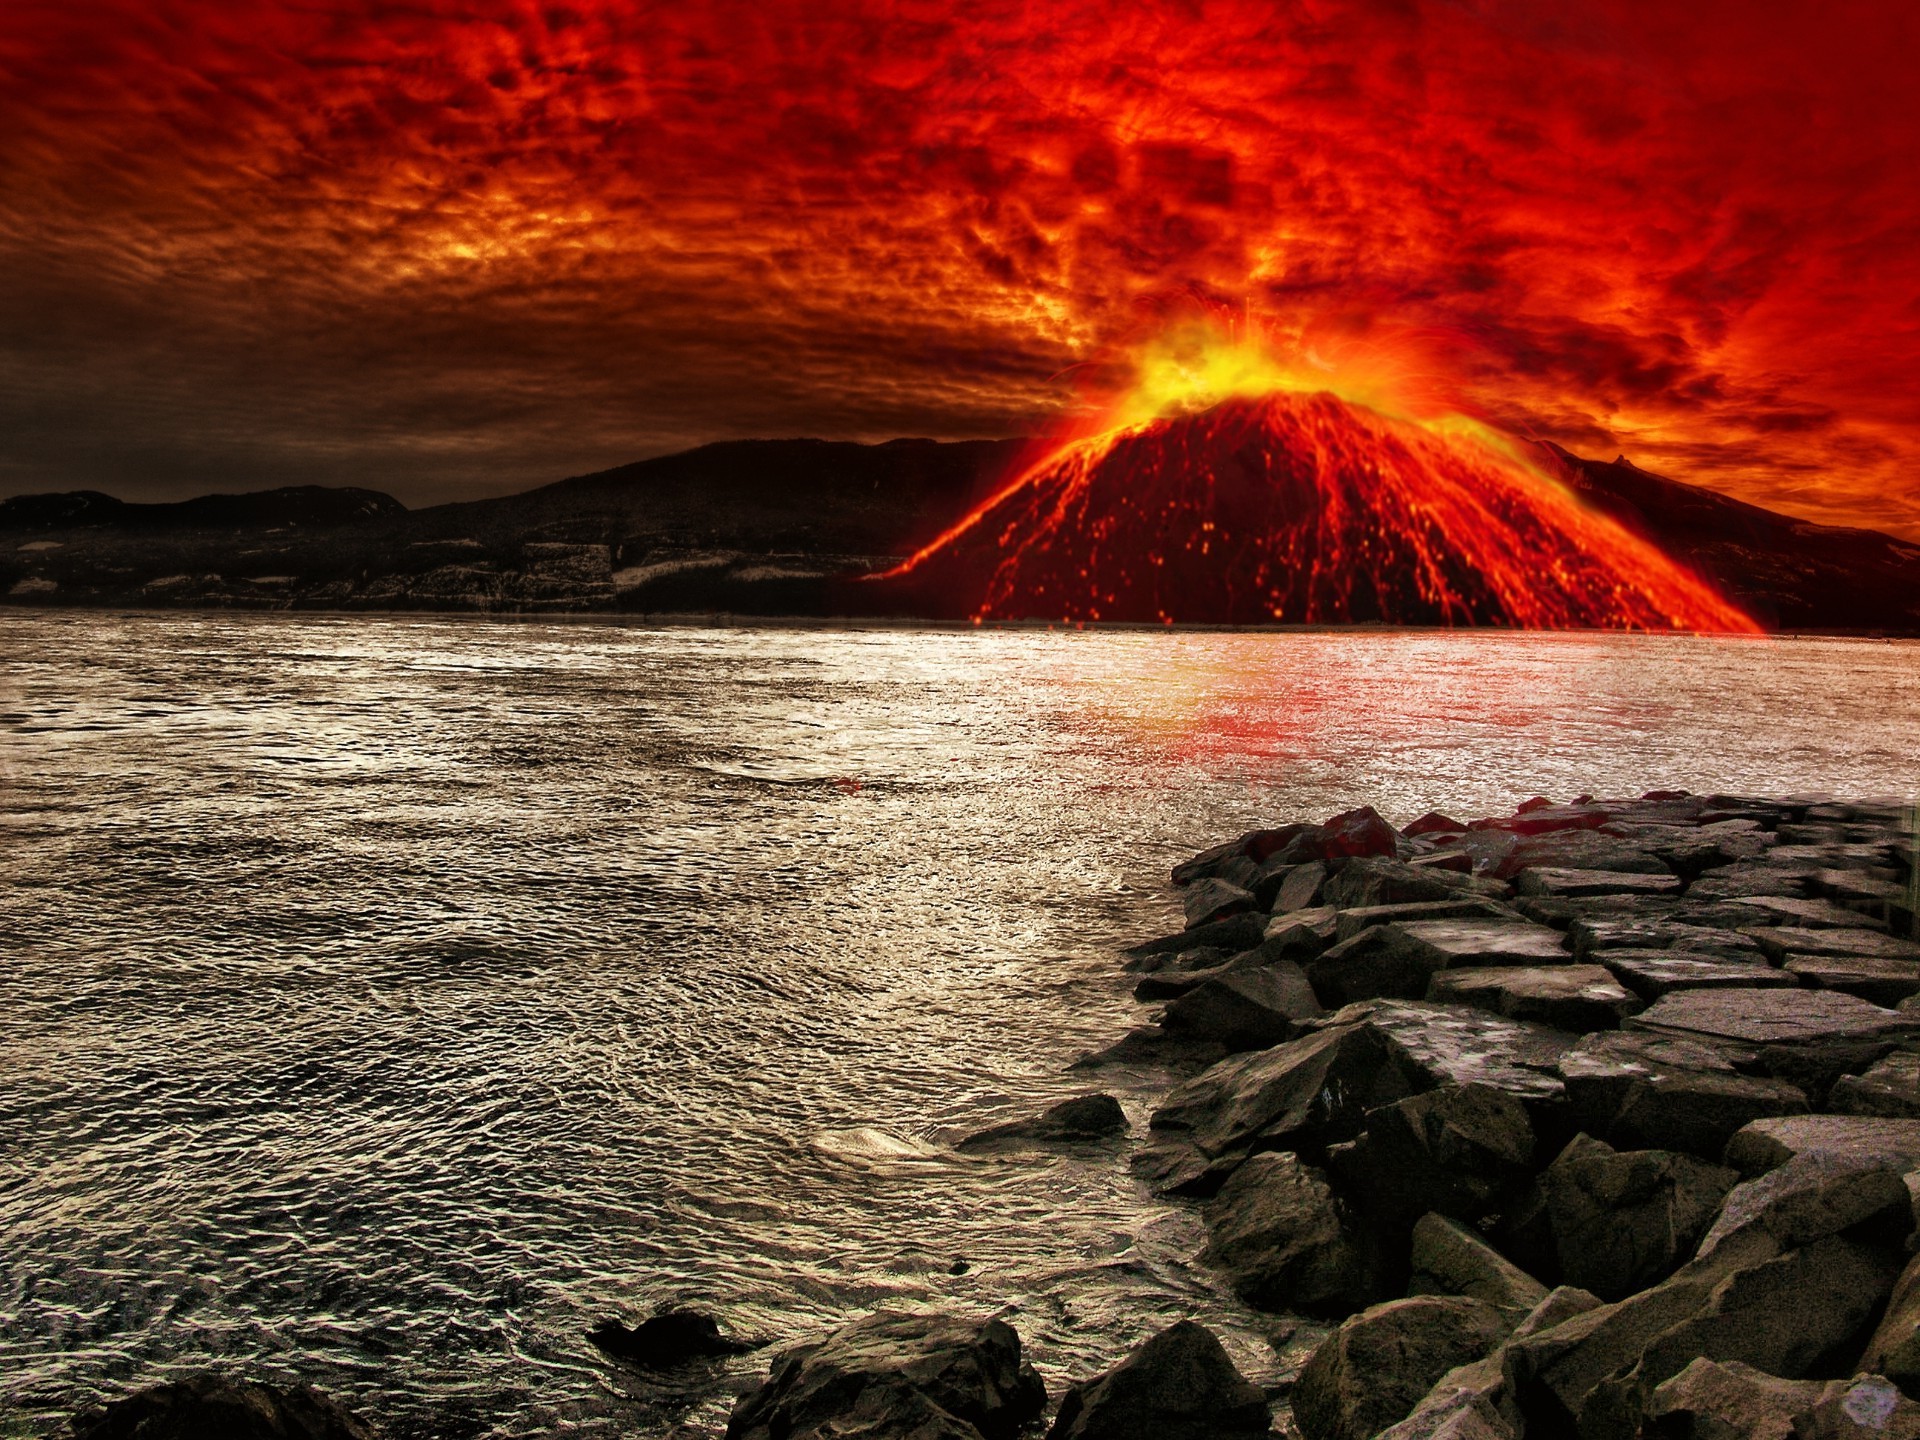 вулкан закат океан воды пляж море вечером шторм моря рассвет сумрак пейзаж бедствие пейзаж волна небо свет